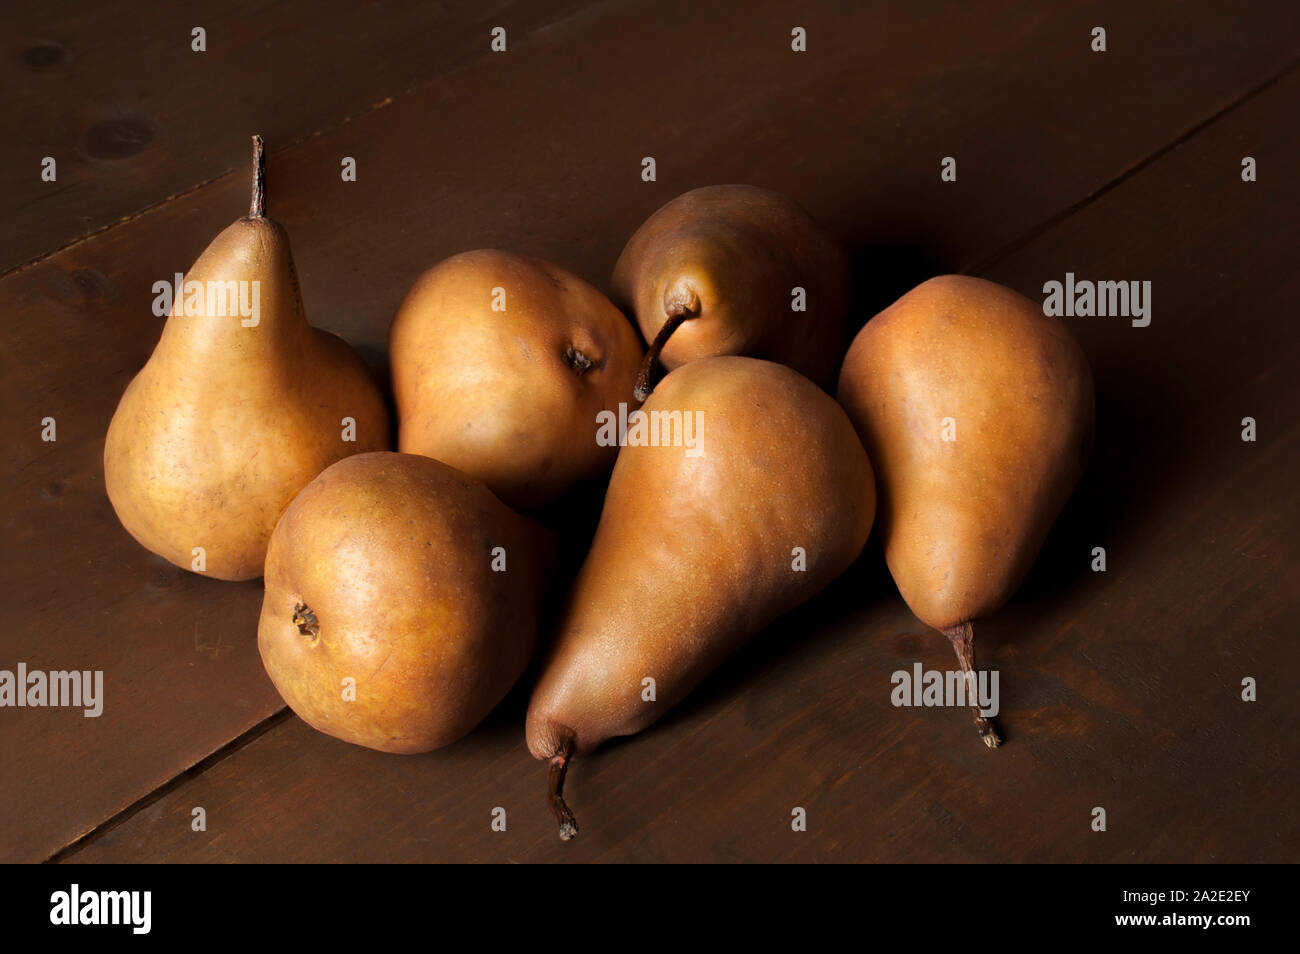 Groupe de poires dans la photographie de la vie STILL chiaroscuro technique, basse-clé photographie de nourriture claire ou sombre, concept de peinture à l'huile Banque D'Images